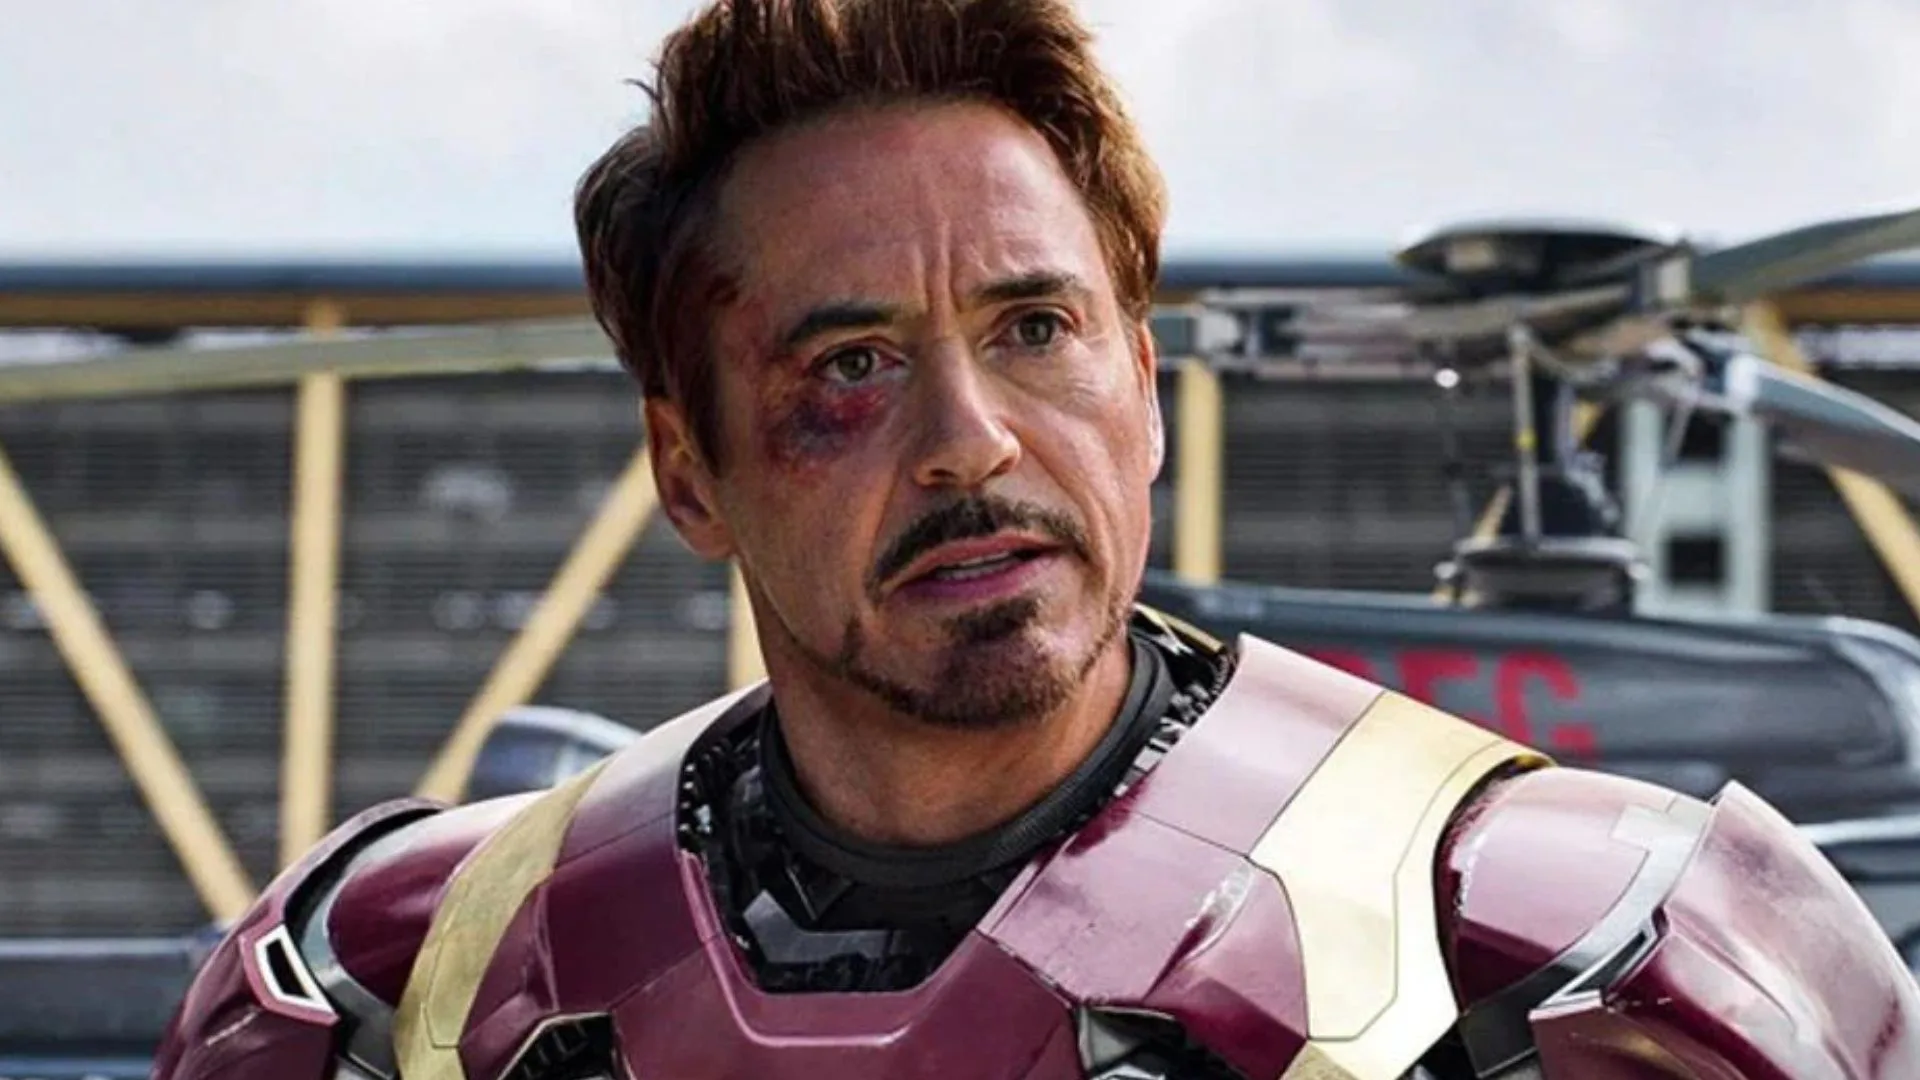 Se ha considerado la posibilidad de traer de vuelta al elenco original de Avengers, entre ellos a Robert Downey Jr. como Iron Man, debido al nulo éxito de las últimas producciones del UCM.